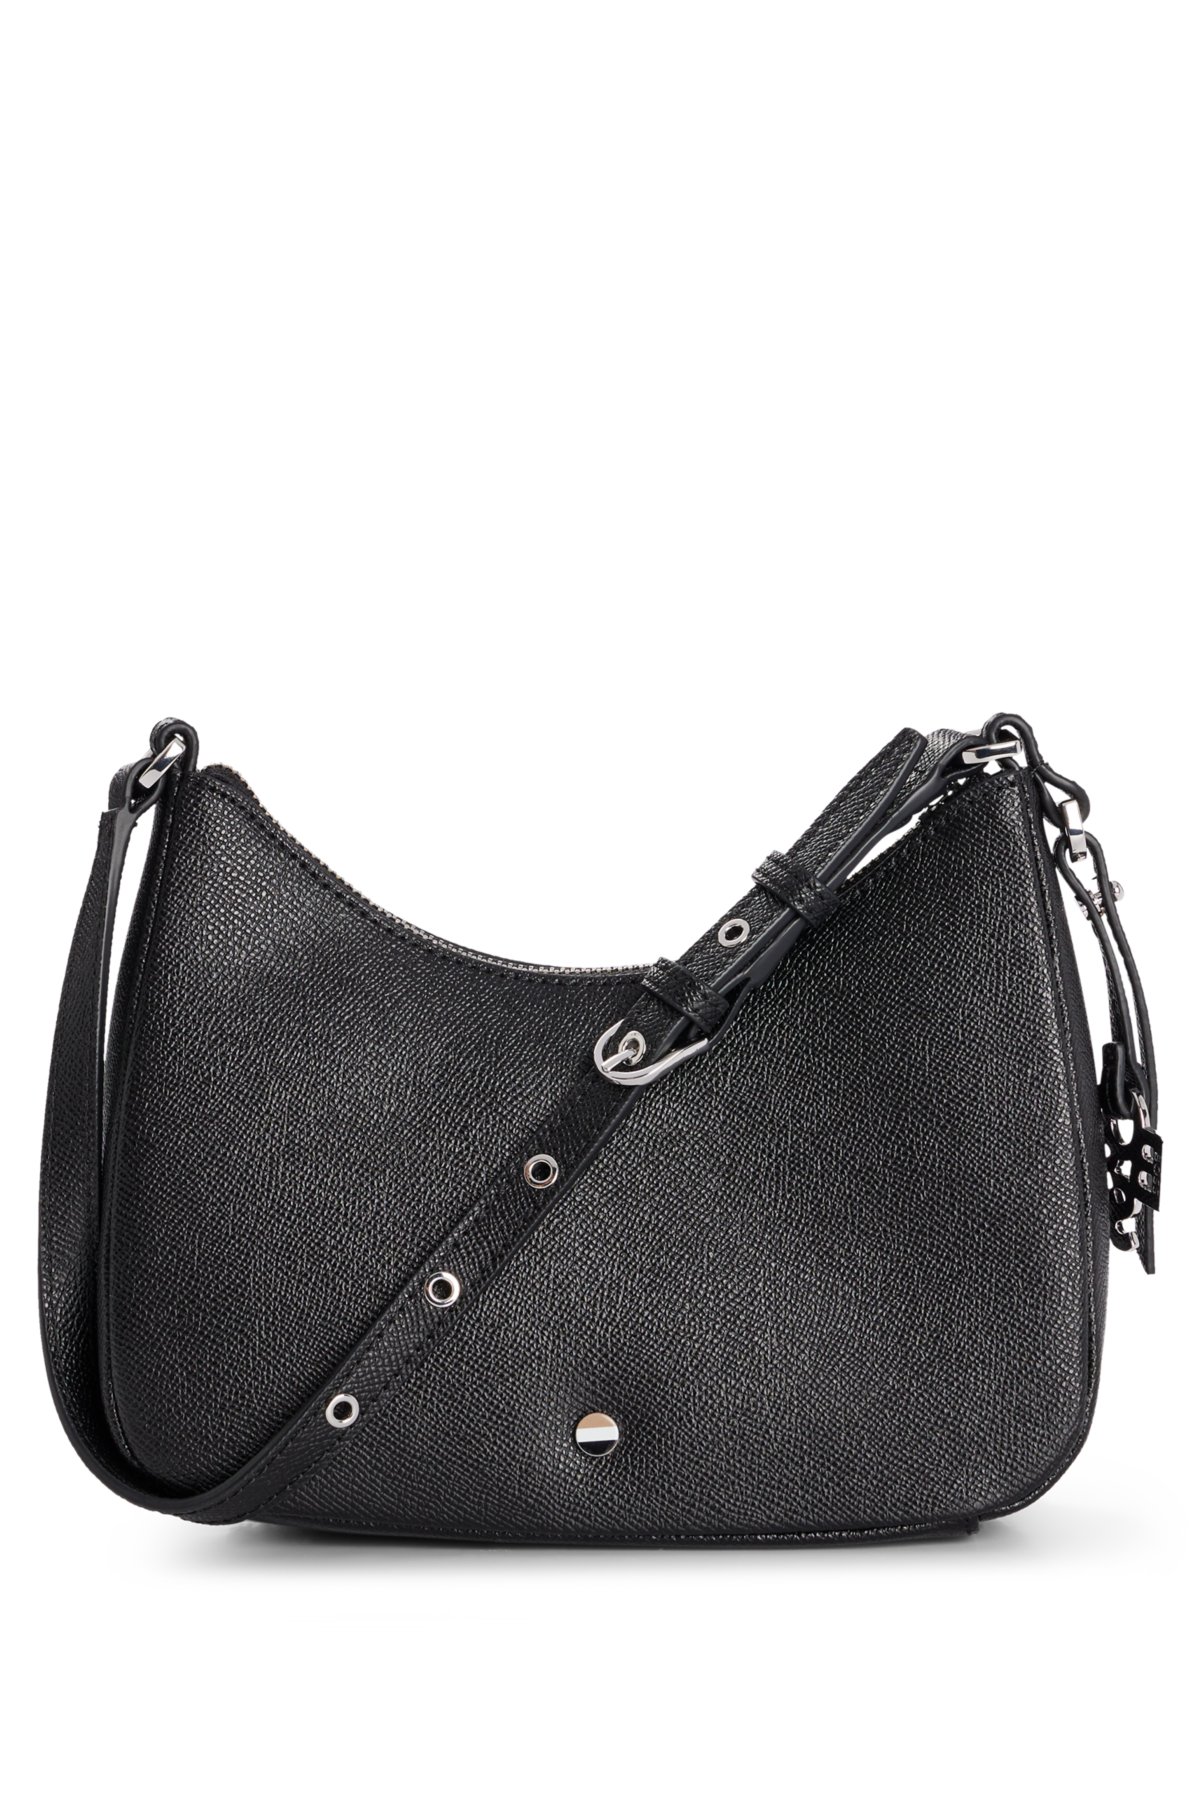 Bounty karakter criticus BOSS - Grained-leather hobo bag with shaken-logo hardware charm